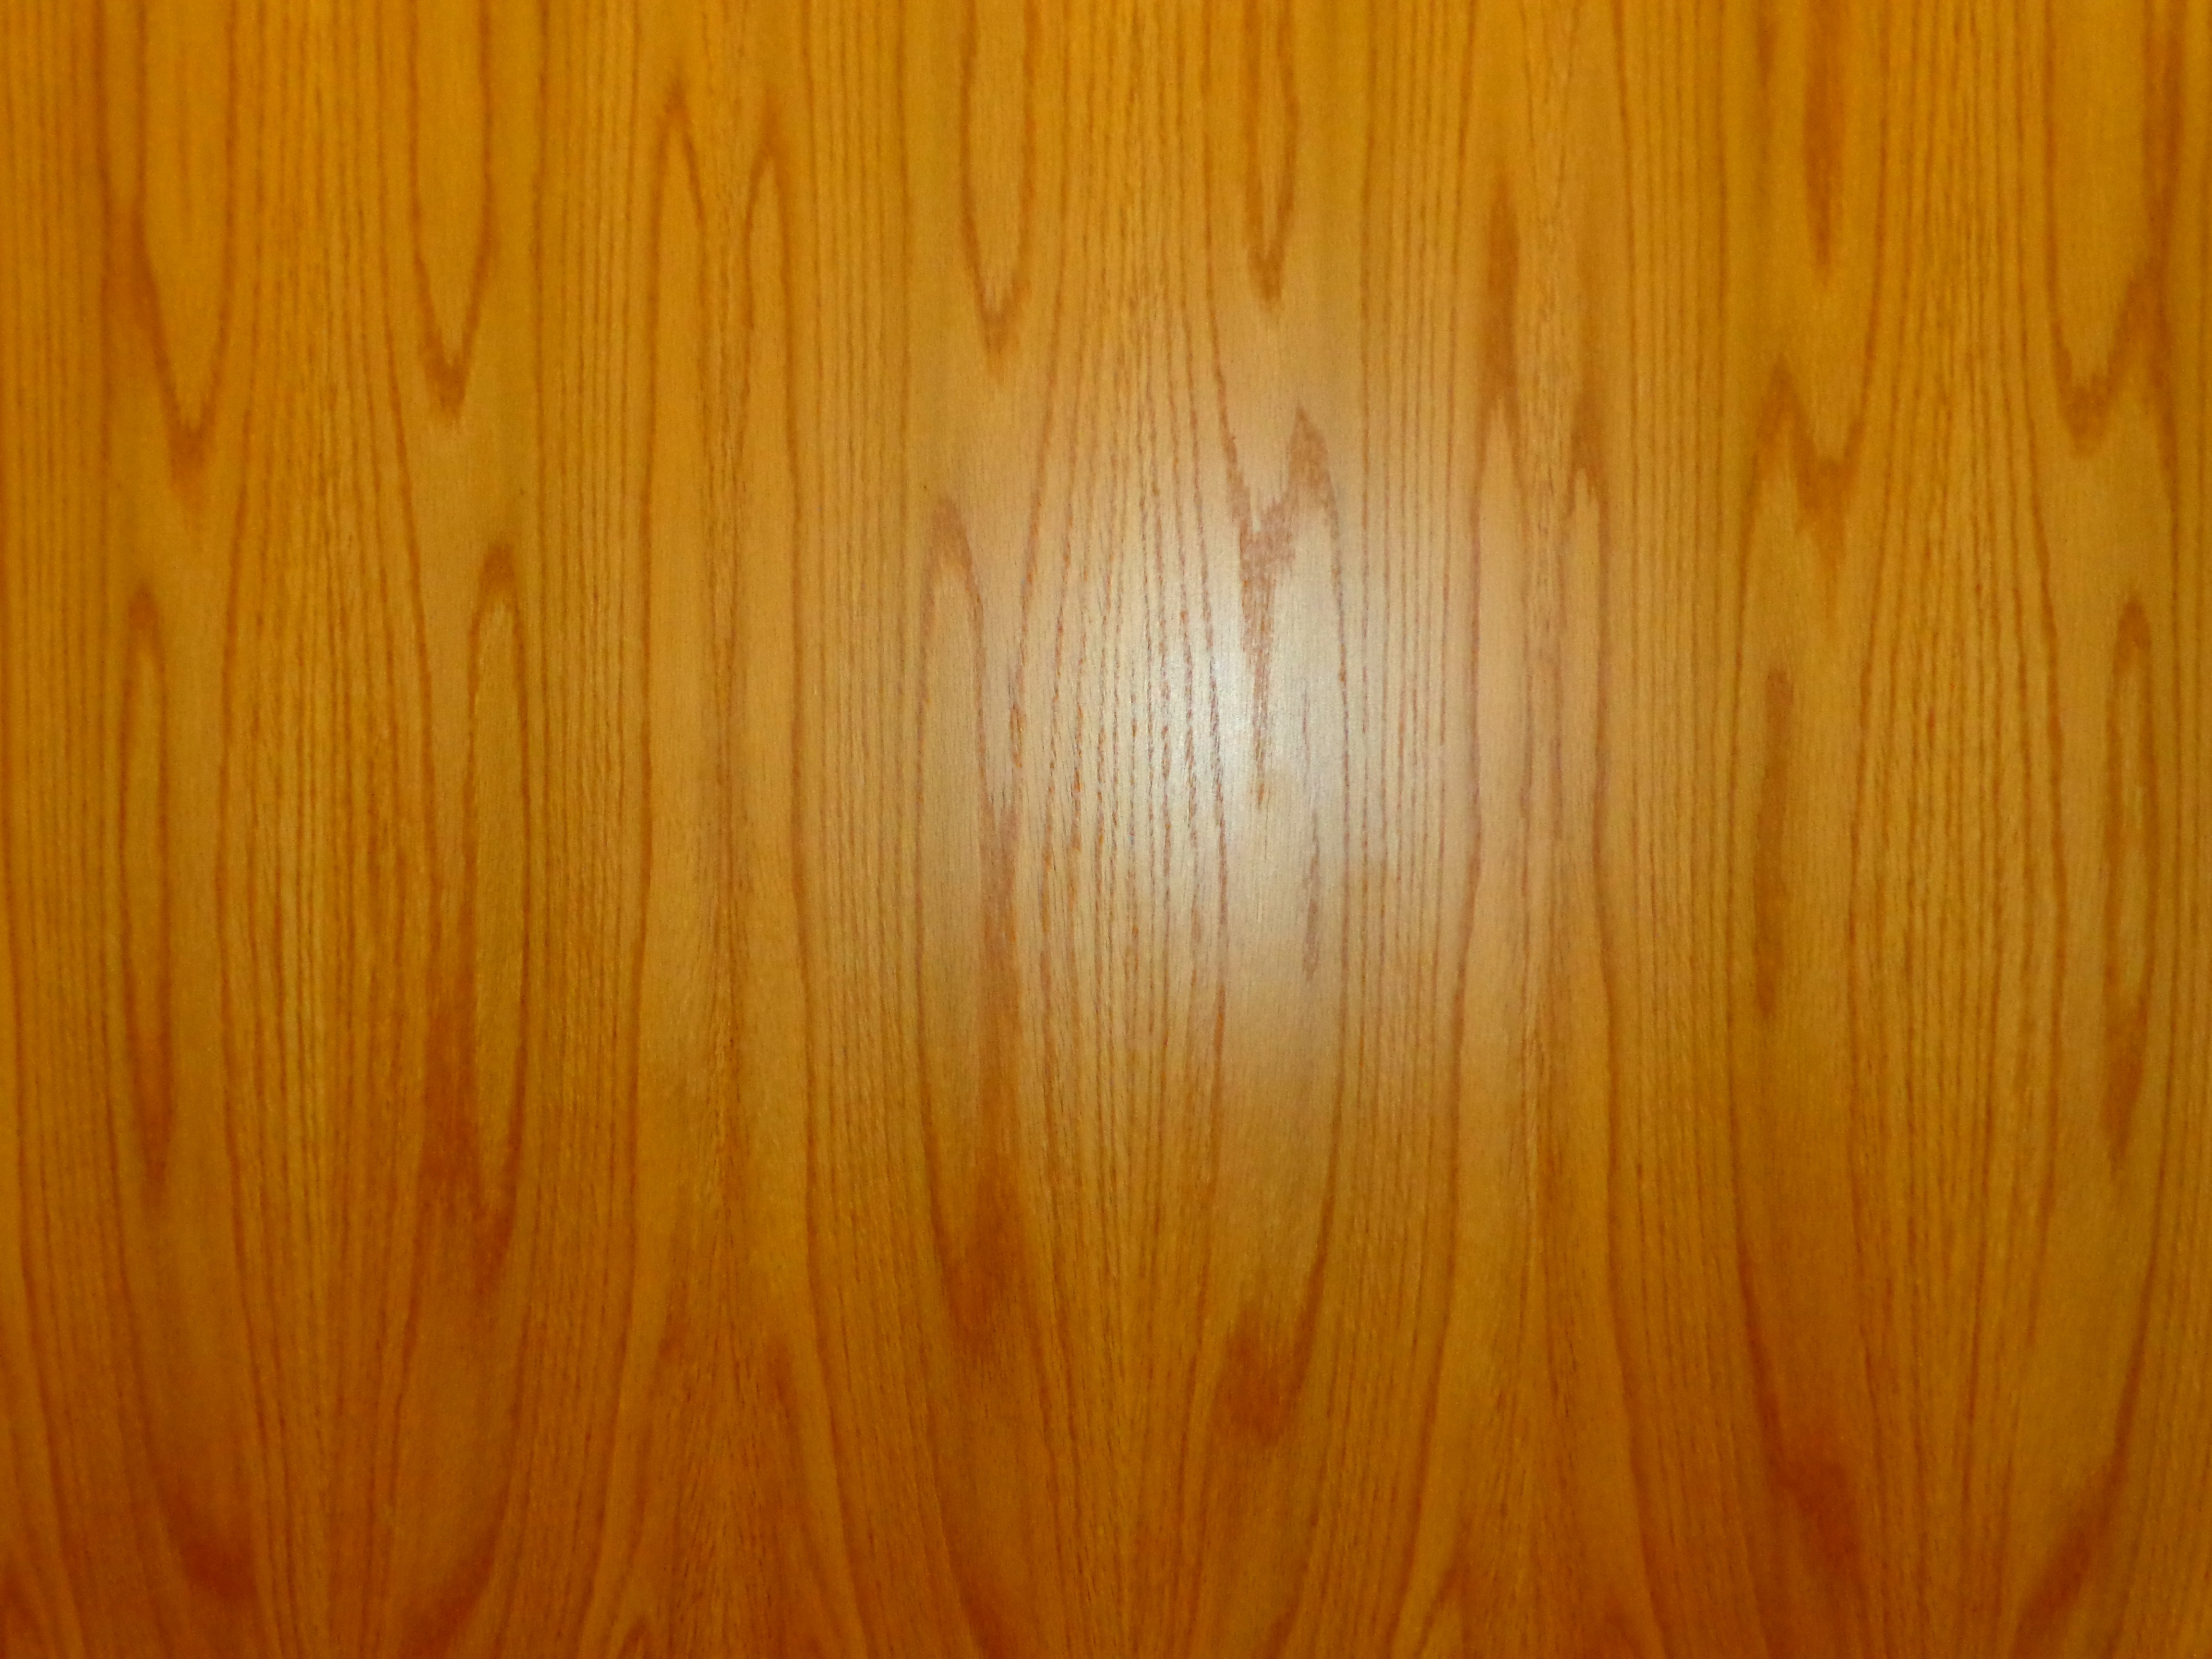 Wood Grain Texture Picture Free Photograph Photos Public Domain